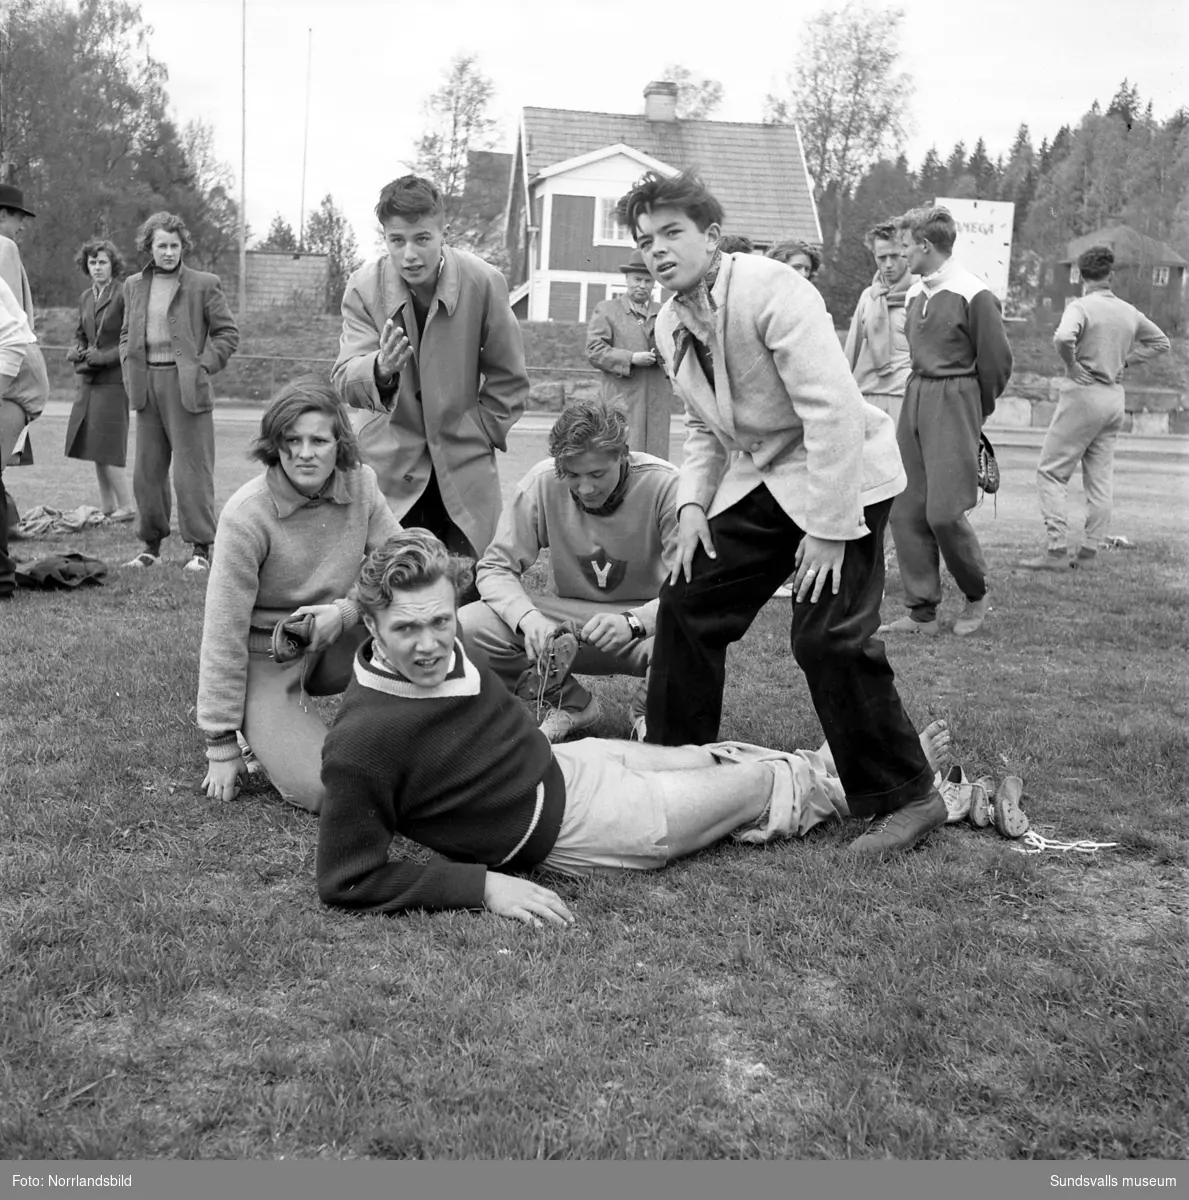 Folkskolans idrottstävling i Idrottsparken. IK Vig triumferade i tjugomannastafetten, även gruppbilder och enskilda idrottsmän/kvinnor.